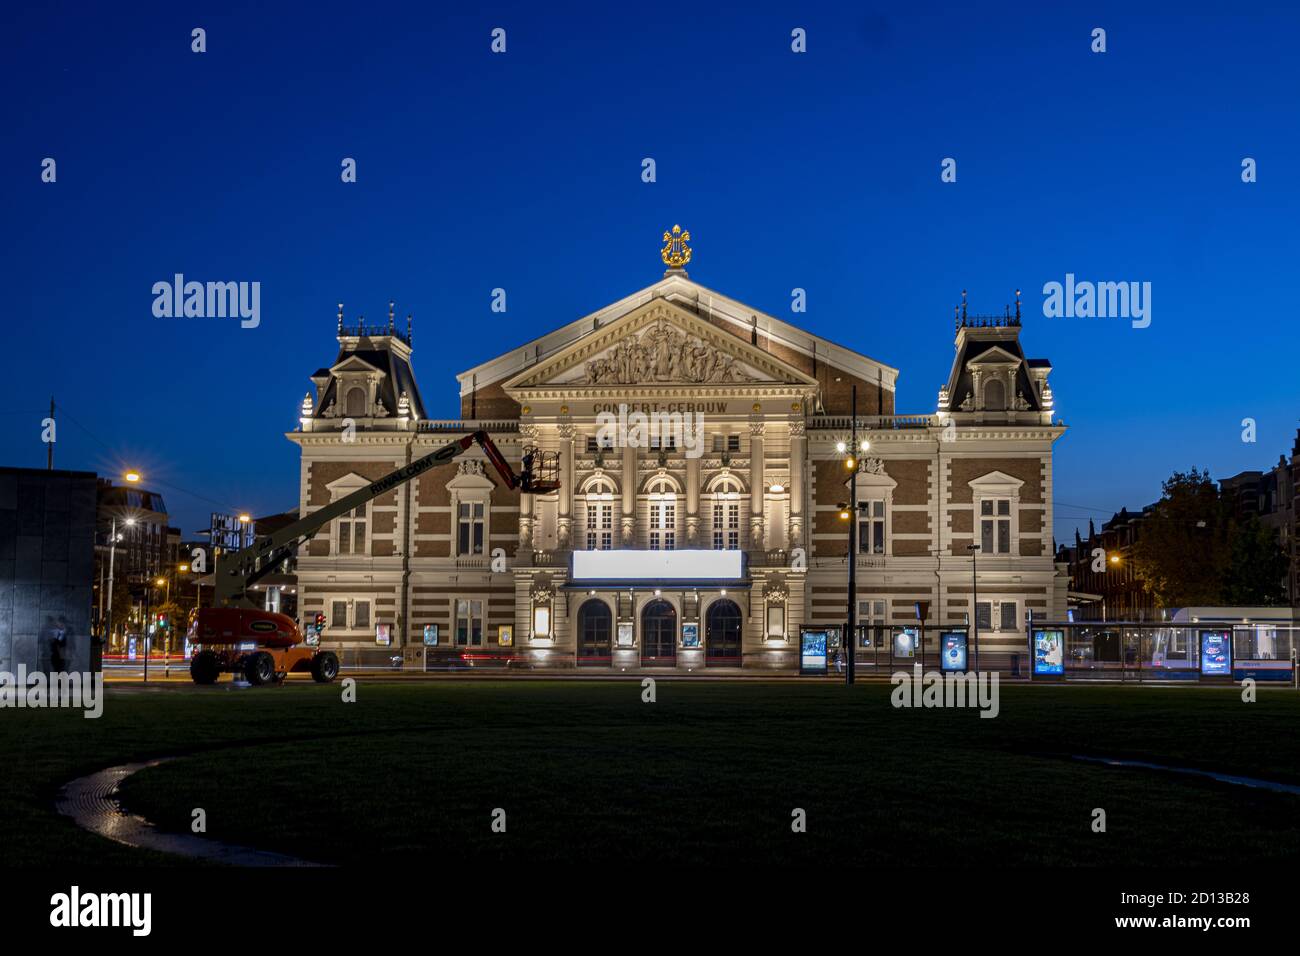 AMSTERDAM, PAYS-BAS - 22 septembre 2020 : image de l'heure bleue du bâtiment historique du théâtre municipal avec une grue d'entretien en face Banque D'Images